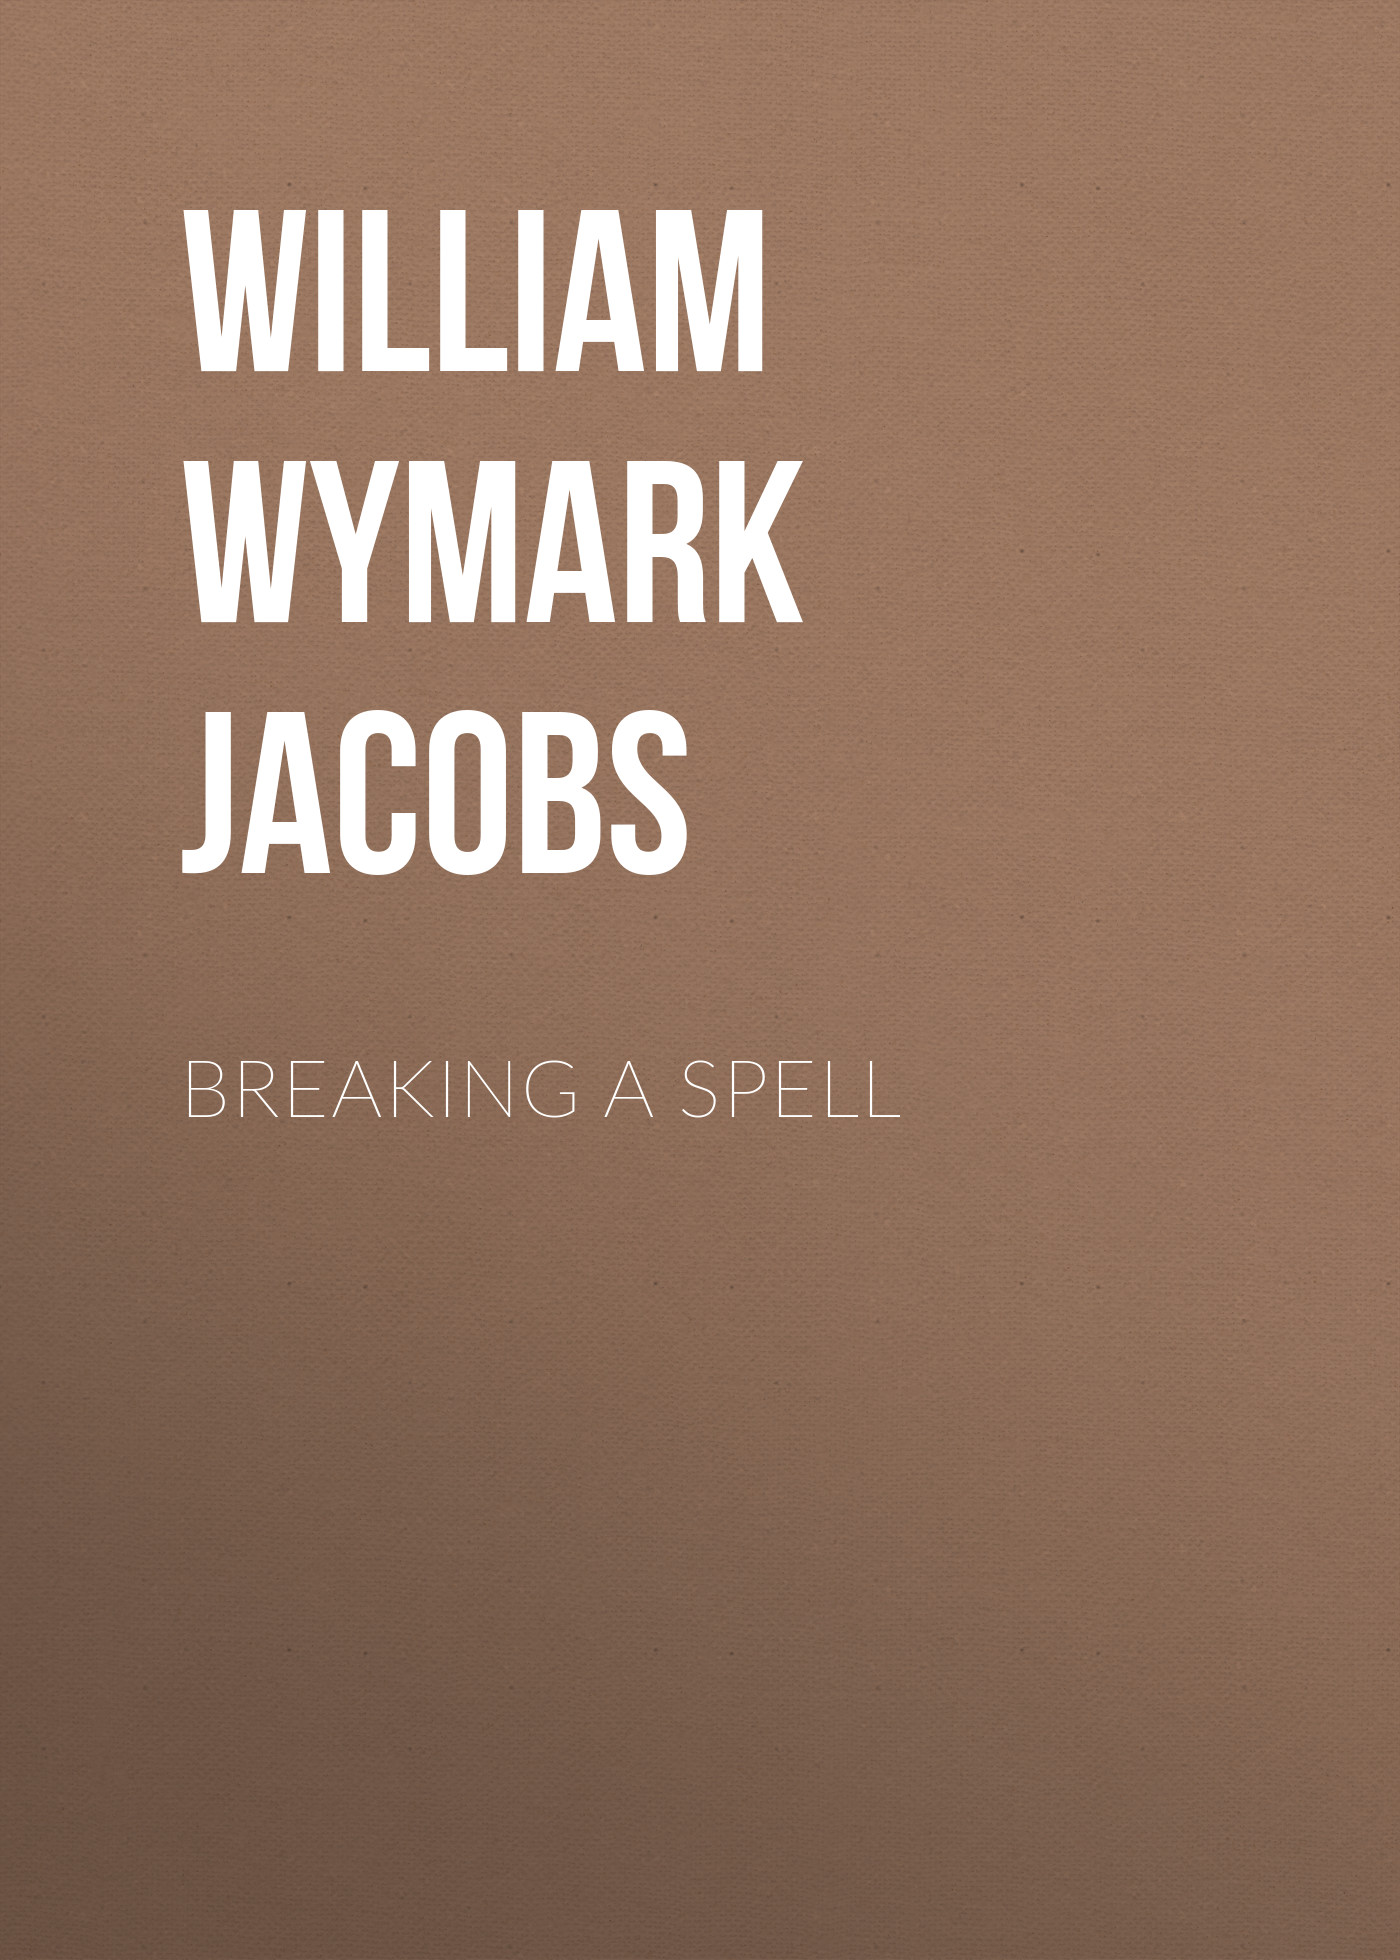 Книга Breaking a Spell из серии , созданная William Wymark Jacobs, может относится к жанру Зарубежный юмор, Зарубежная старинная литература, Зарубежная классика. Стоимость электронной книги Breaking a Spell с идентификатором 34841710 составляет 0 руб.